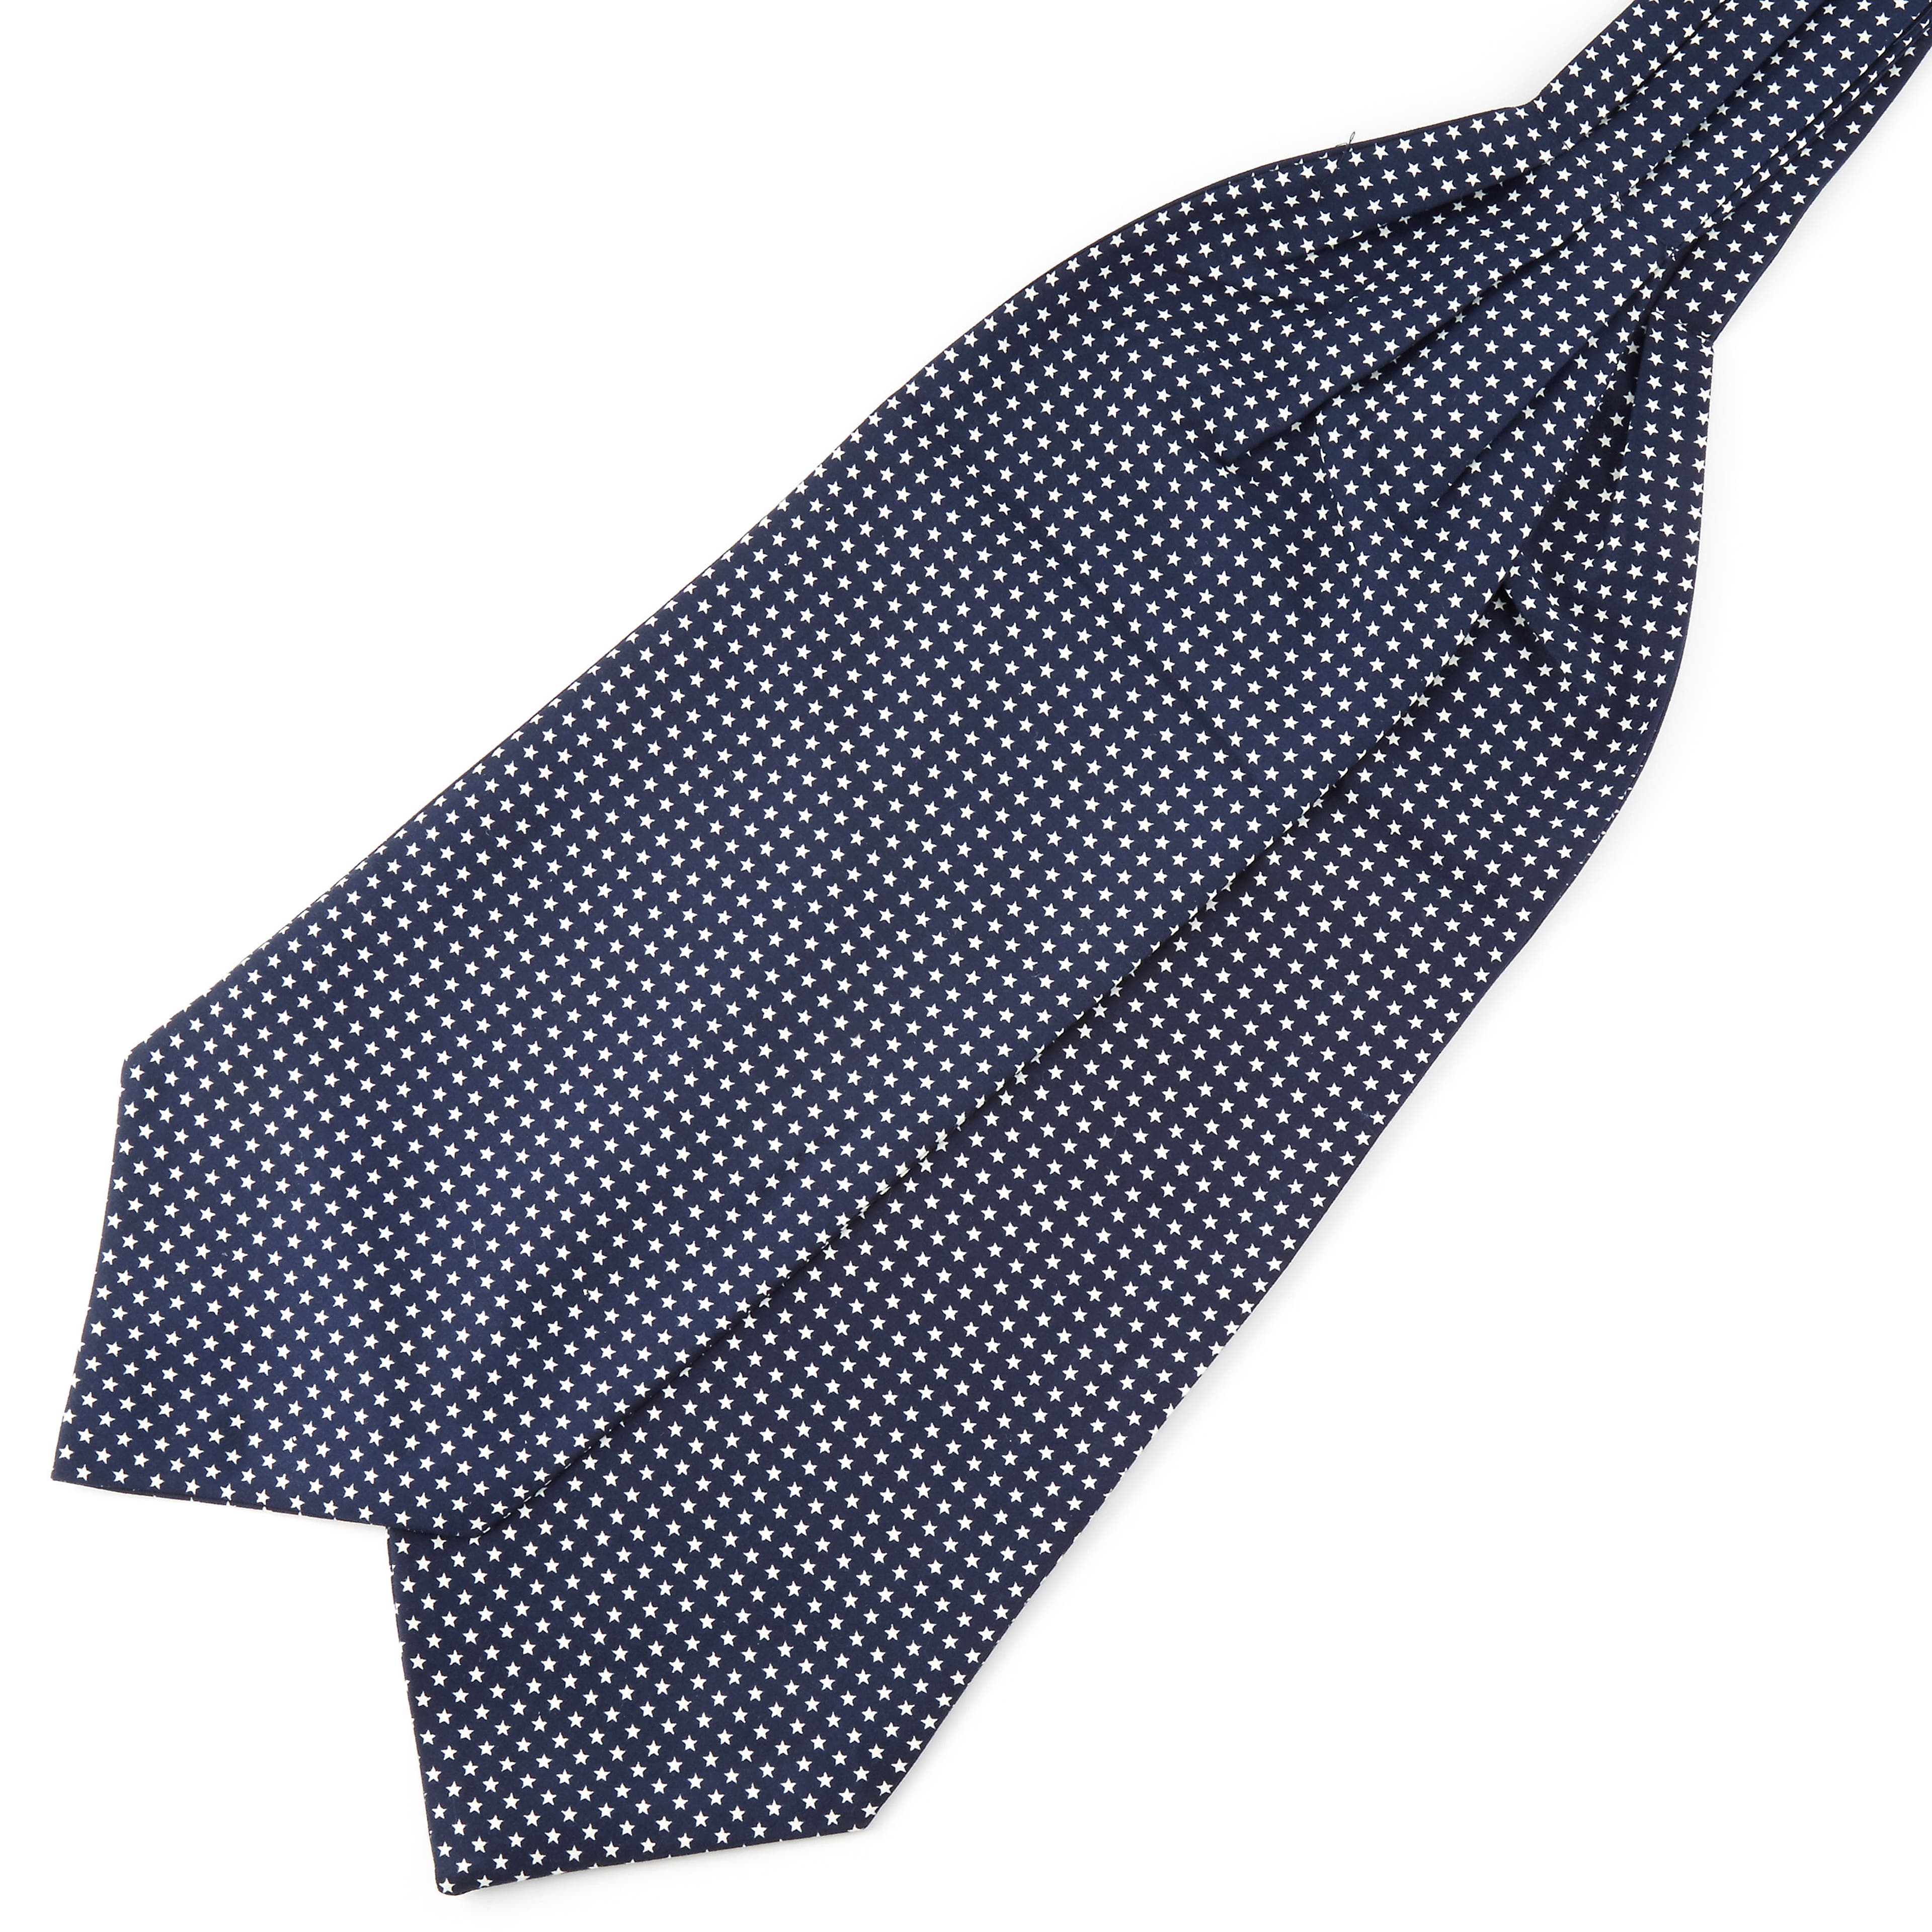 Cravată ascot din poliester bleumarin cu stele